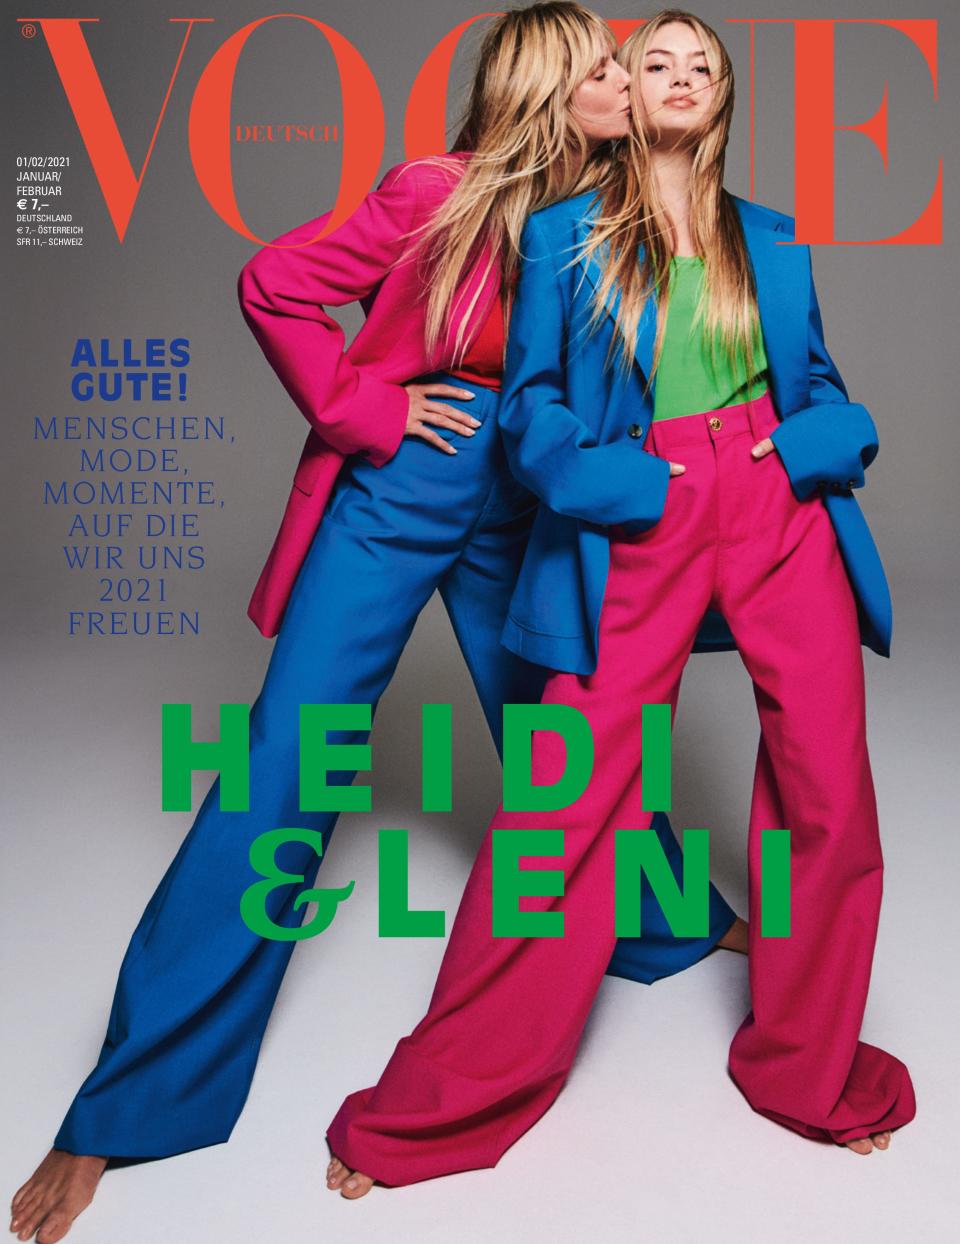 Leni Klum makes her modeling debut alongside her mother Heidi Klum on the January/February 2021 cover of Vogue Germany